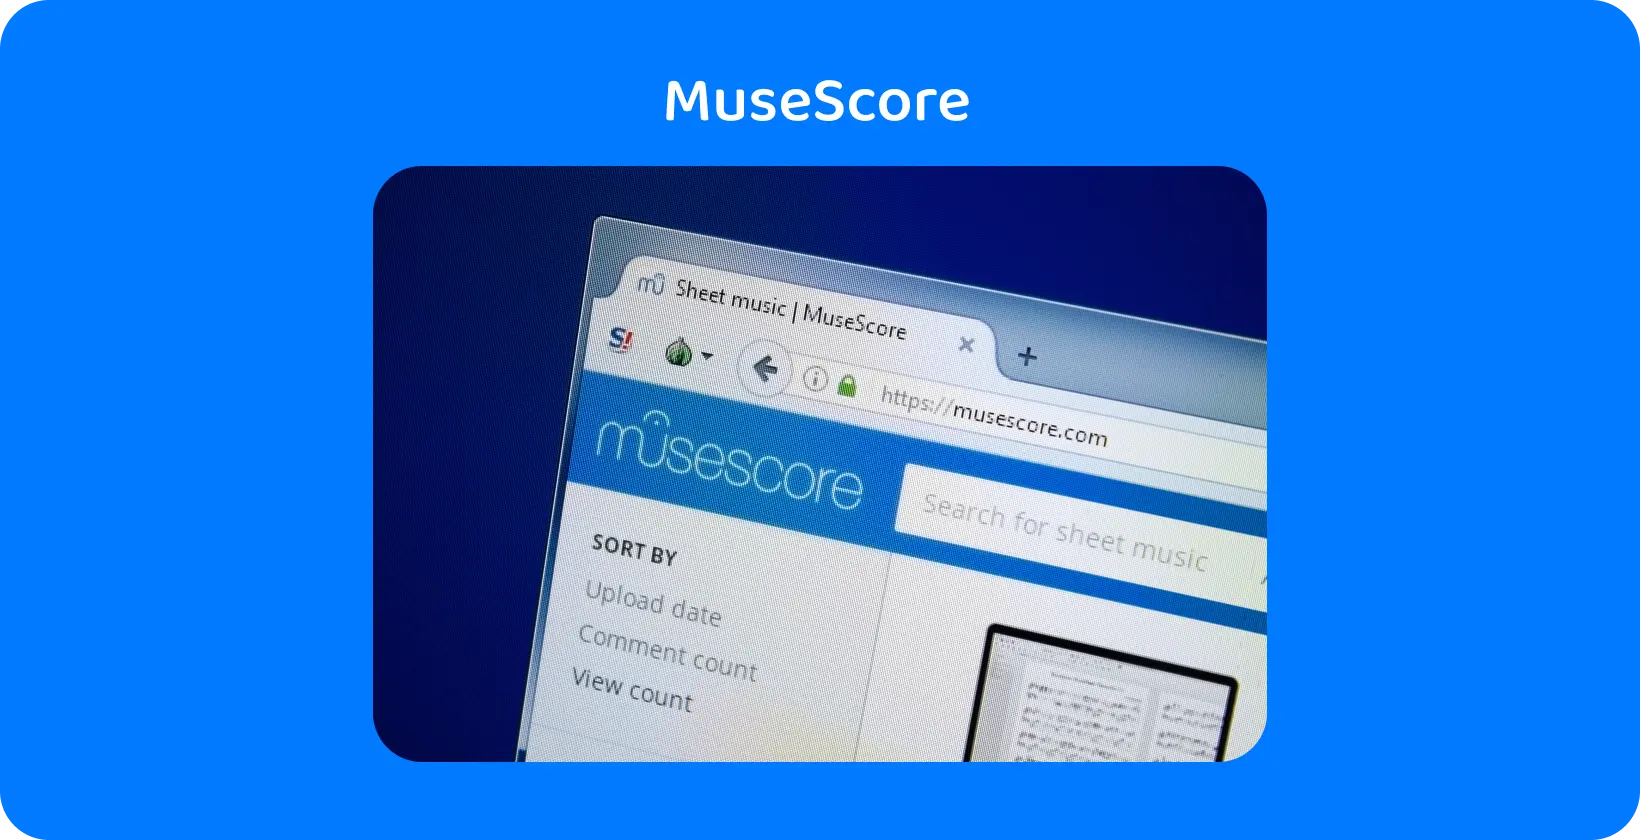 תקריב של אתר MuseScore, הדגשת חיפוש מוסיקה גיליון, כלי מפתח להדרכה בתמלול שמע.